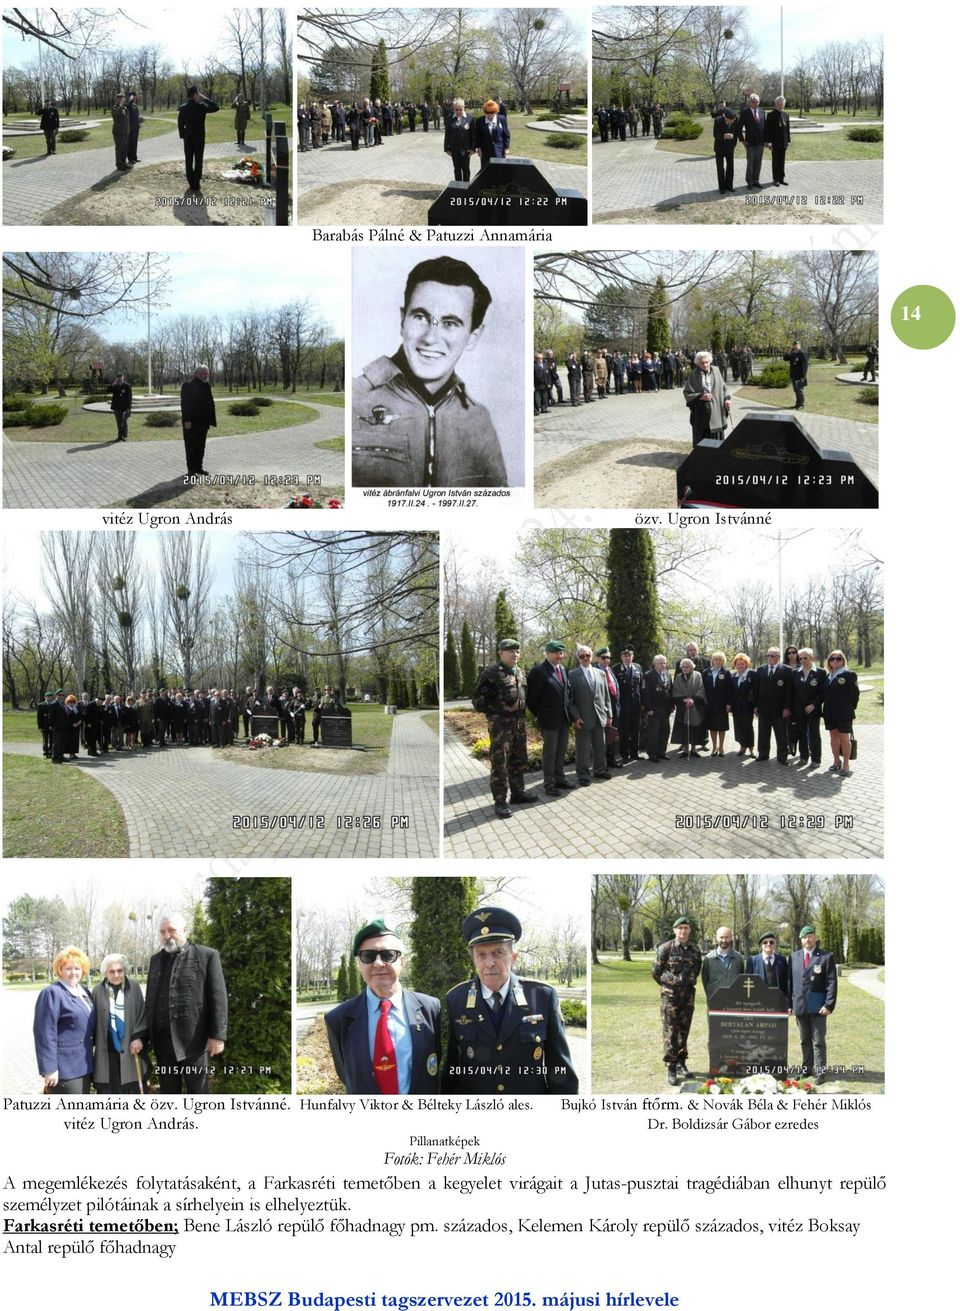 Boldizsár Gábor ezredes Pillanatképek Fotók: Fehér Miklós A megemlékezés folytatásaként, a Farkasréti temetőben a kegyelet virágait a